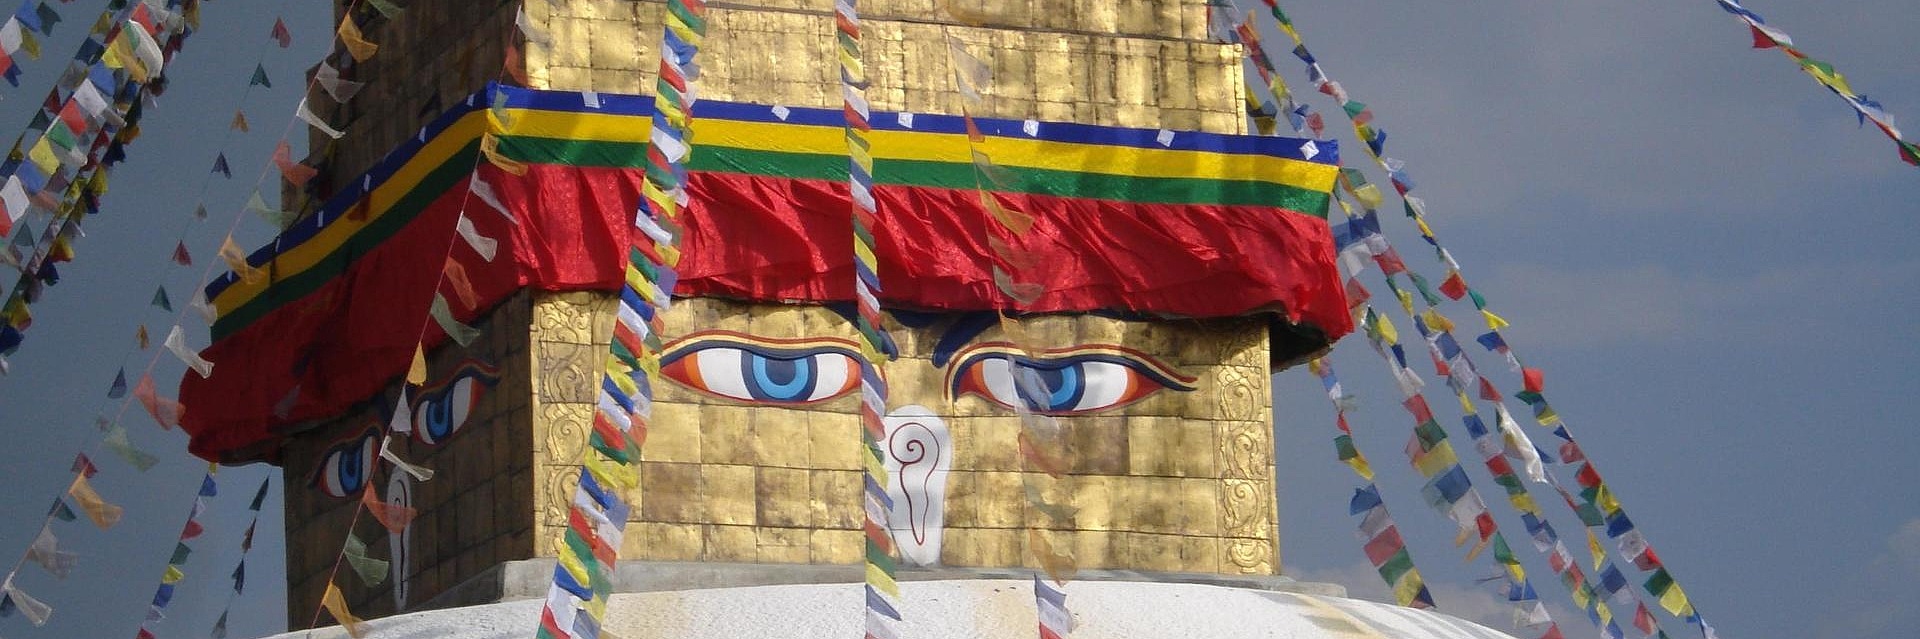 Bemalter Tempel mit Girlanden auf einer Anhöhe in Nepal